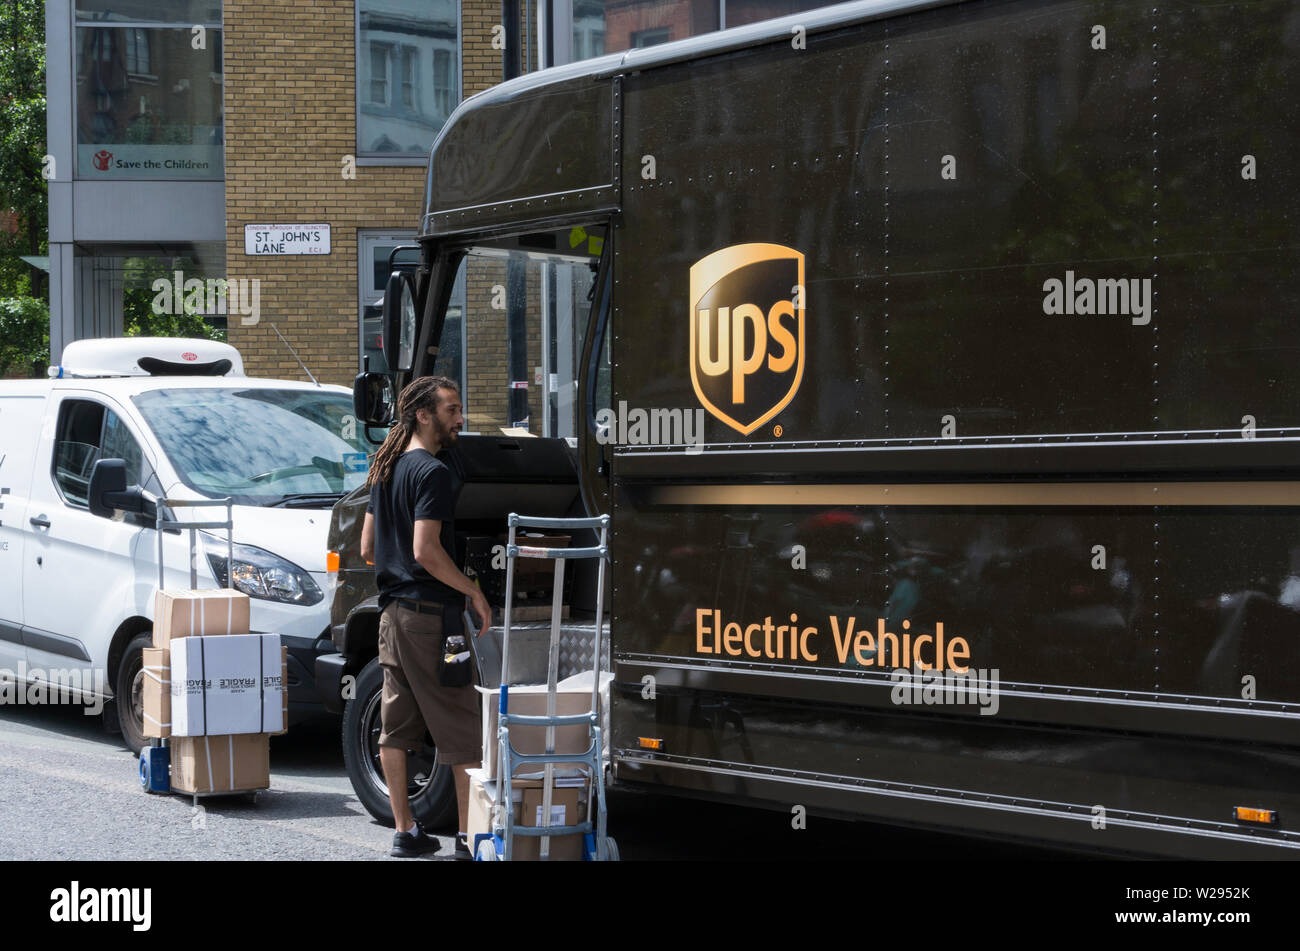 Eine UPS (United Parcel Service) Lieferwagen auf den Straßen von London, Großbritannien Stockfoto